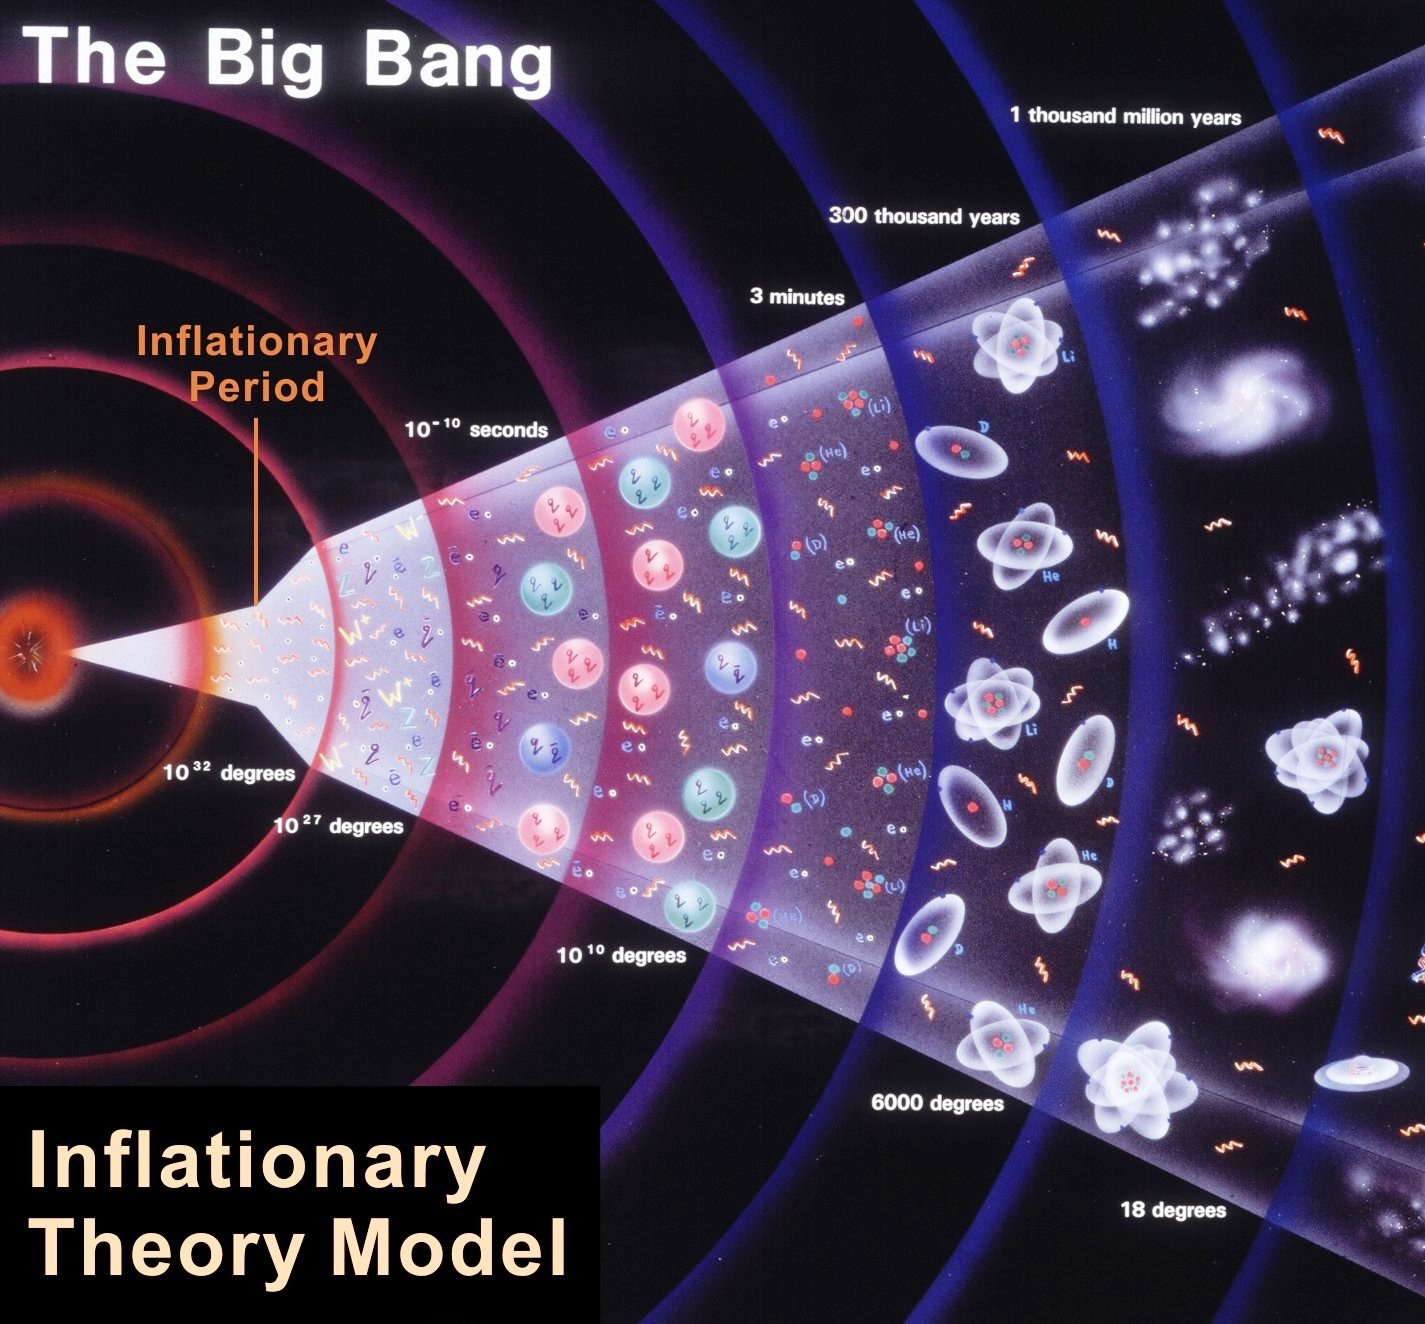 L'histoire du cosmos, de l'ère de Planck à nos jours. Peu après le temps de Planck, l'espace aurait subi pendant une infime fraction de seconde une période d'expansion exponentiellement accélérée :&nbsp;la phase inflationnaire (inflationary period) de&nbsp;la théorie de l'inflation. C'est à la fin de cette phase que la matière de l'univers observable serait née. L'inflation a peut-être été causée 10-35 seconde après le Big Bang par des analogues du champ de Brout-Englert-Higgs du modèle électrofaible. Vers 10-11 s, une petite phase d'inflation s'est probablement produite au moment où le mécanisme de Brout-Englert-Higgs a donné des masses aux bosons W et Z. La transition de phase électrofaible aurait laissé des traces sous la forme d'un fond de rayonnement gravitationnel fossile qui sera&nbsp;peut-être mesurable dans quelques décennies. © Cern